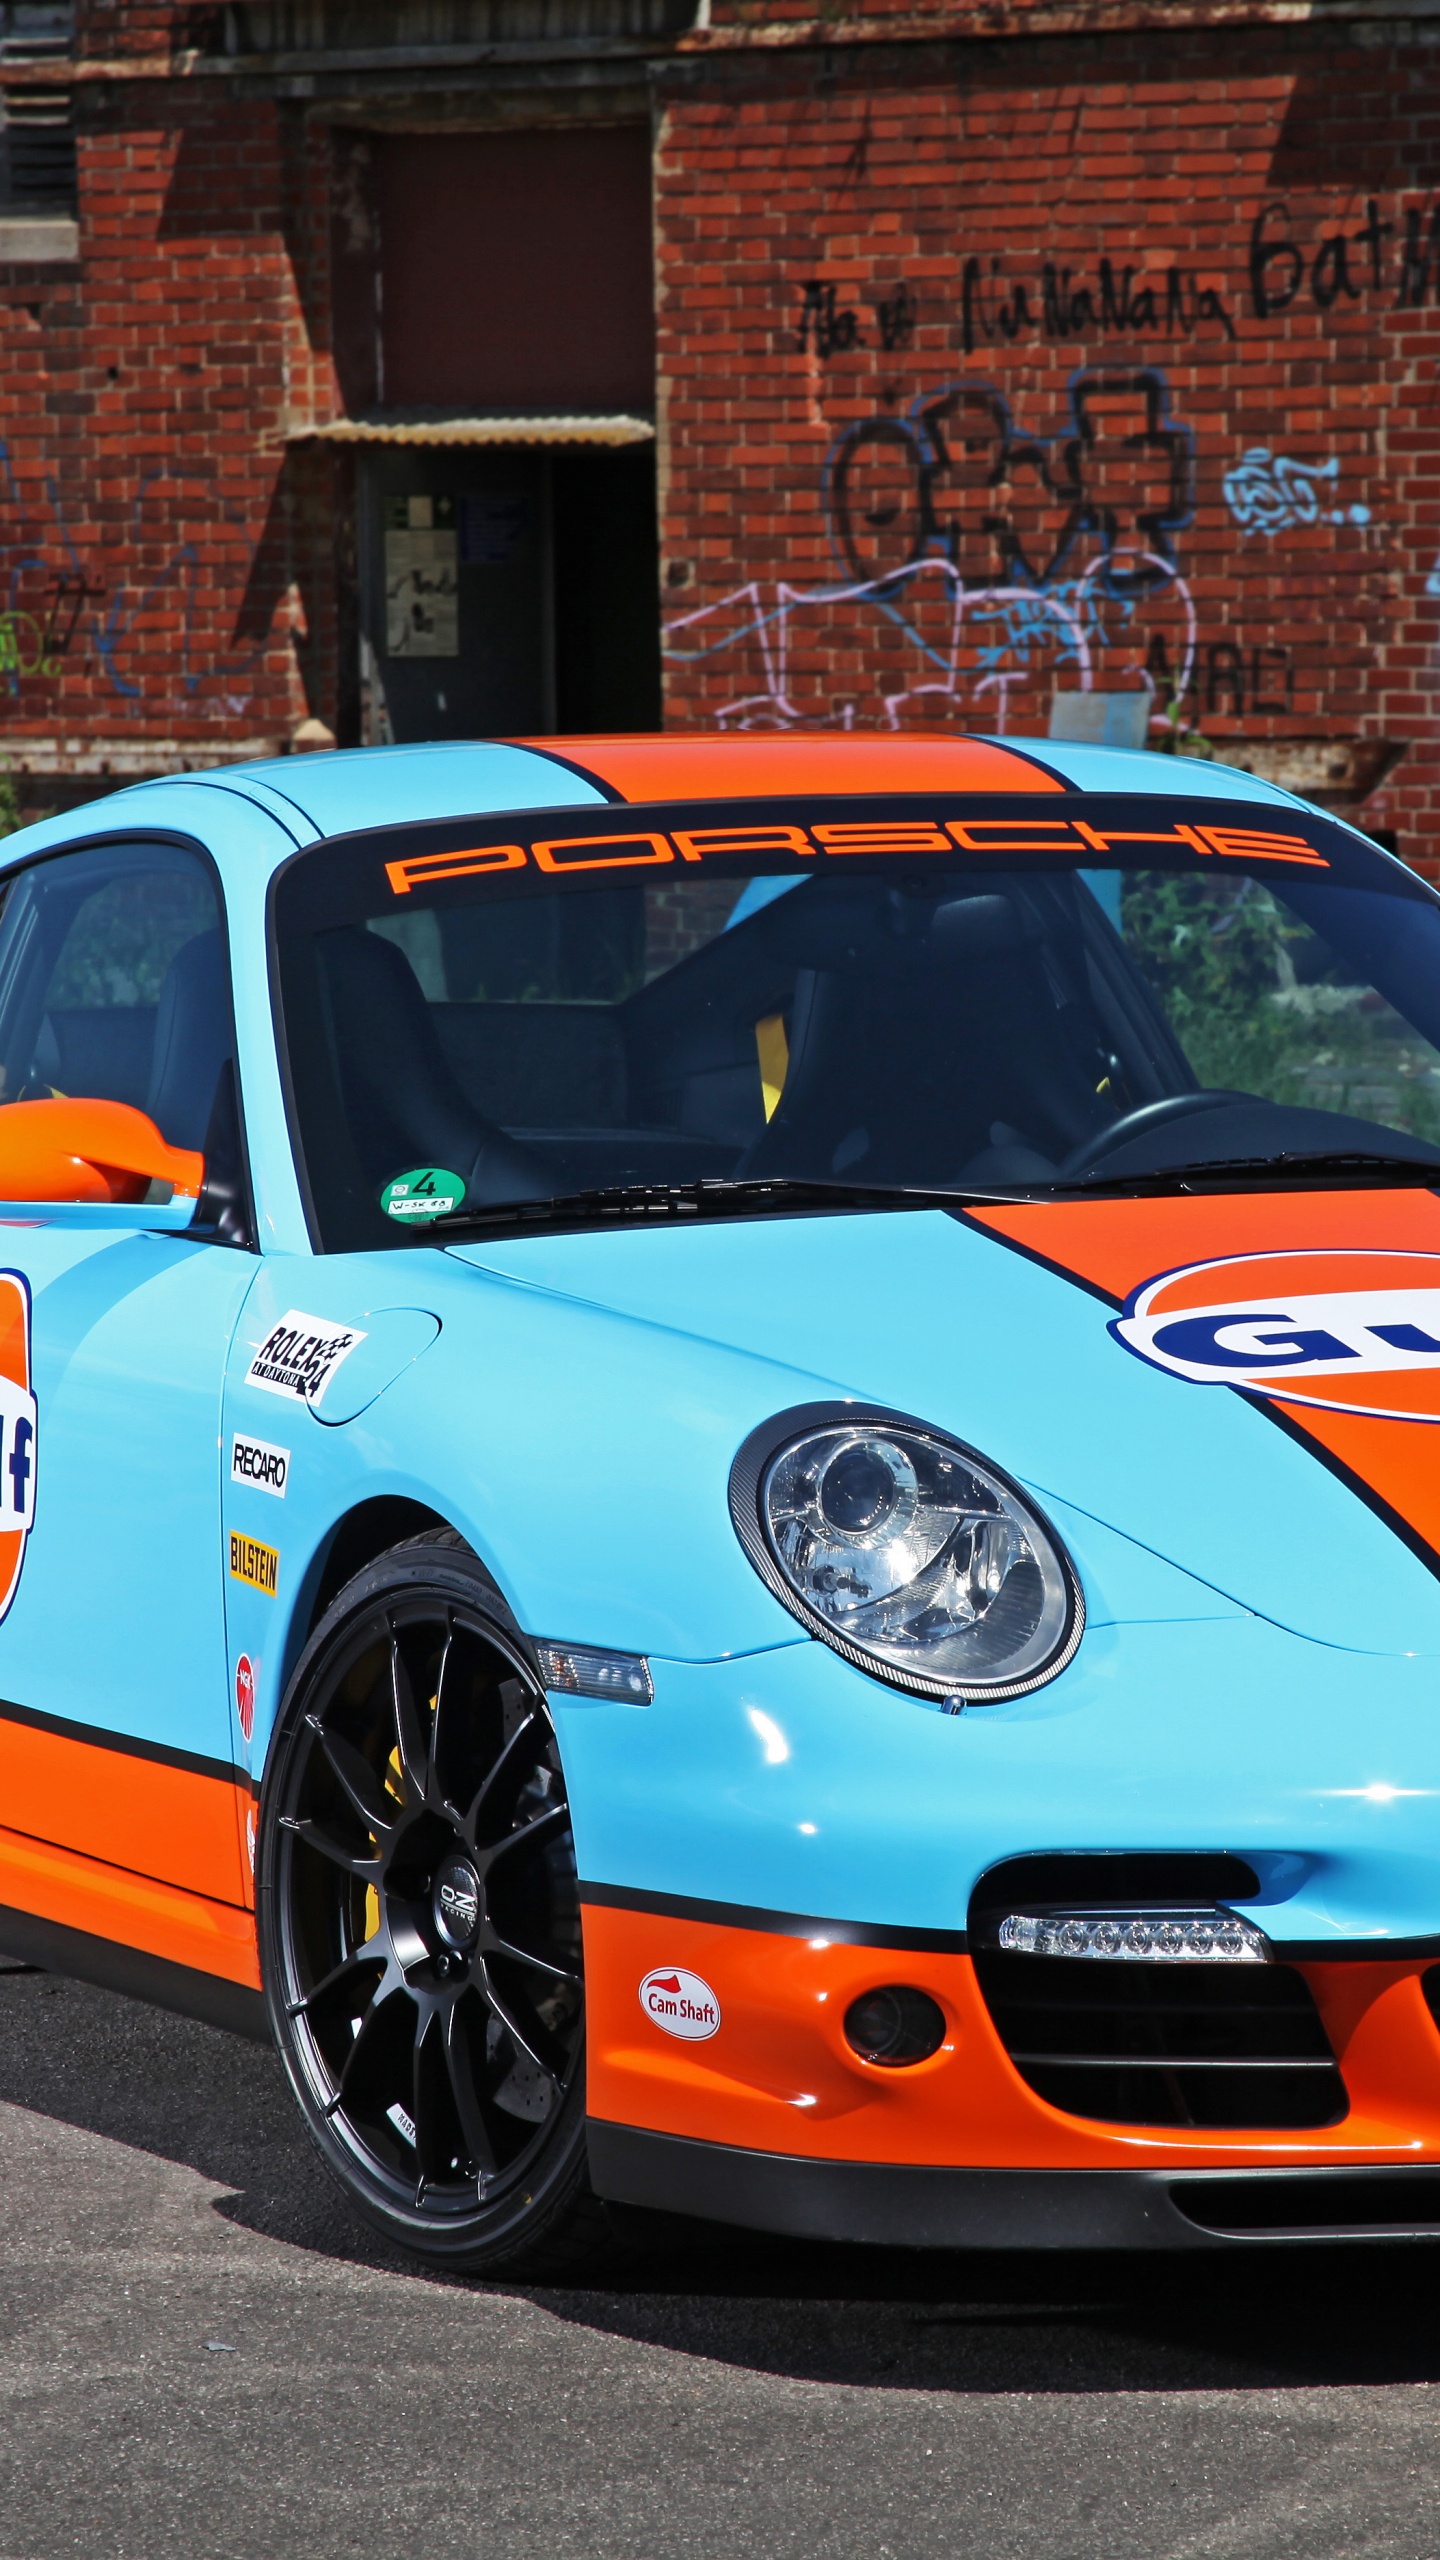 Porsche 911 Azul y Blanco Estacionado Cerca Del Edificio de Ladrillo Marrón Durante el Día. Wallpaper in 1440x2560 Resolution